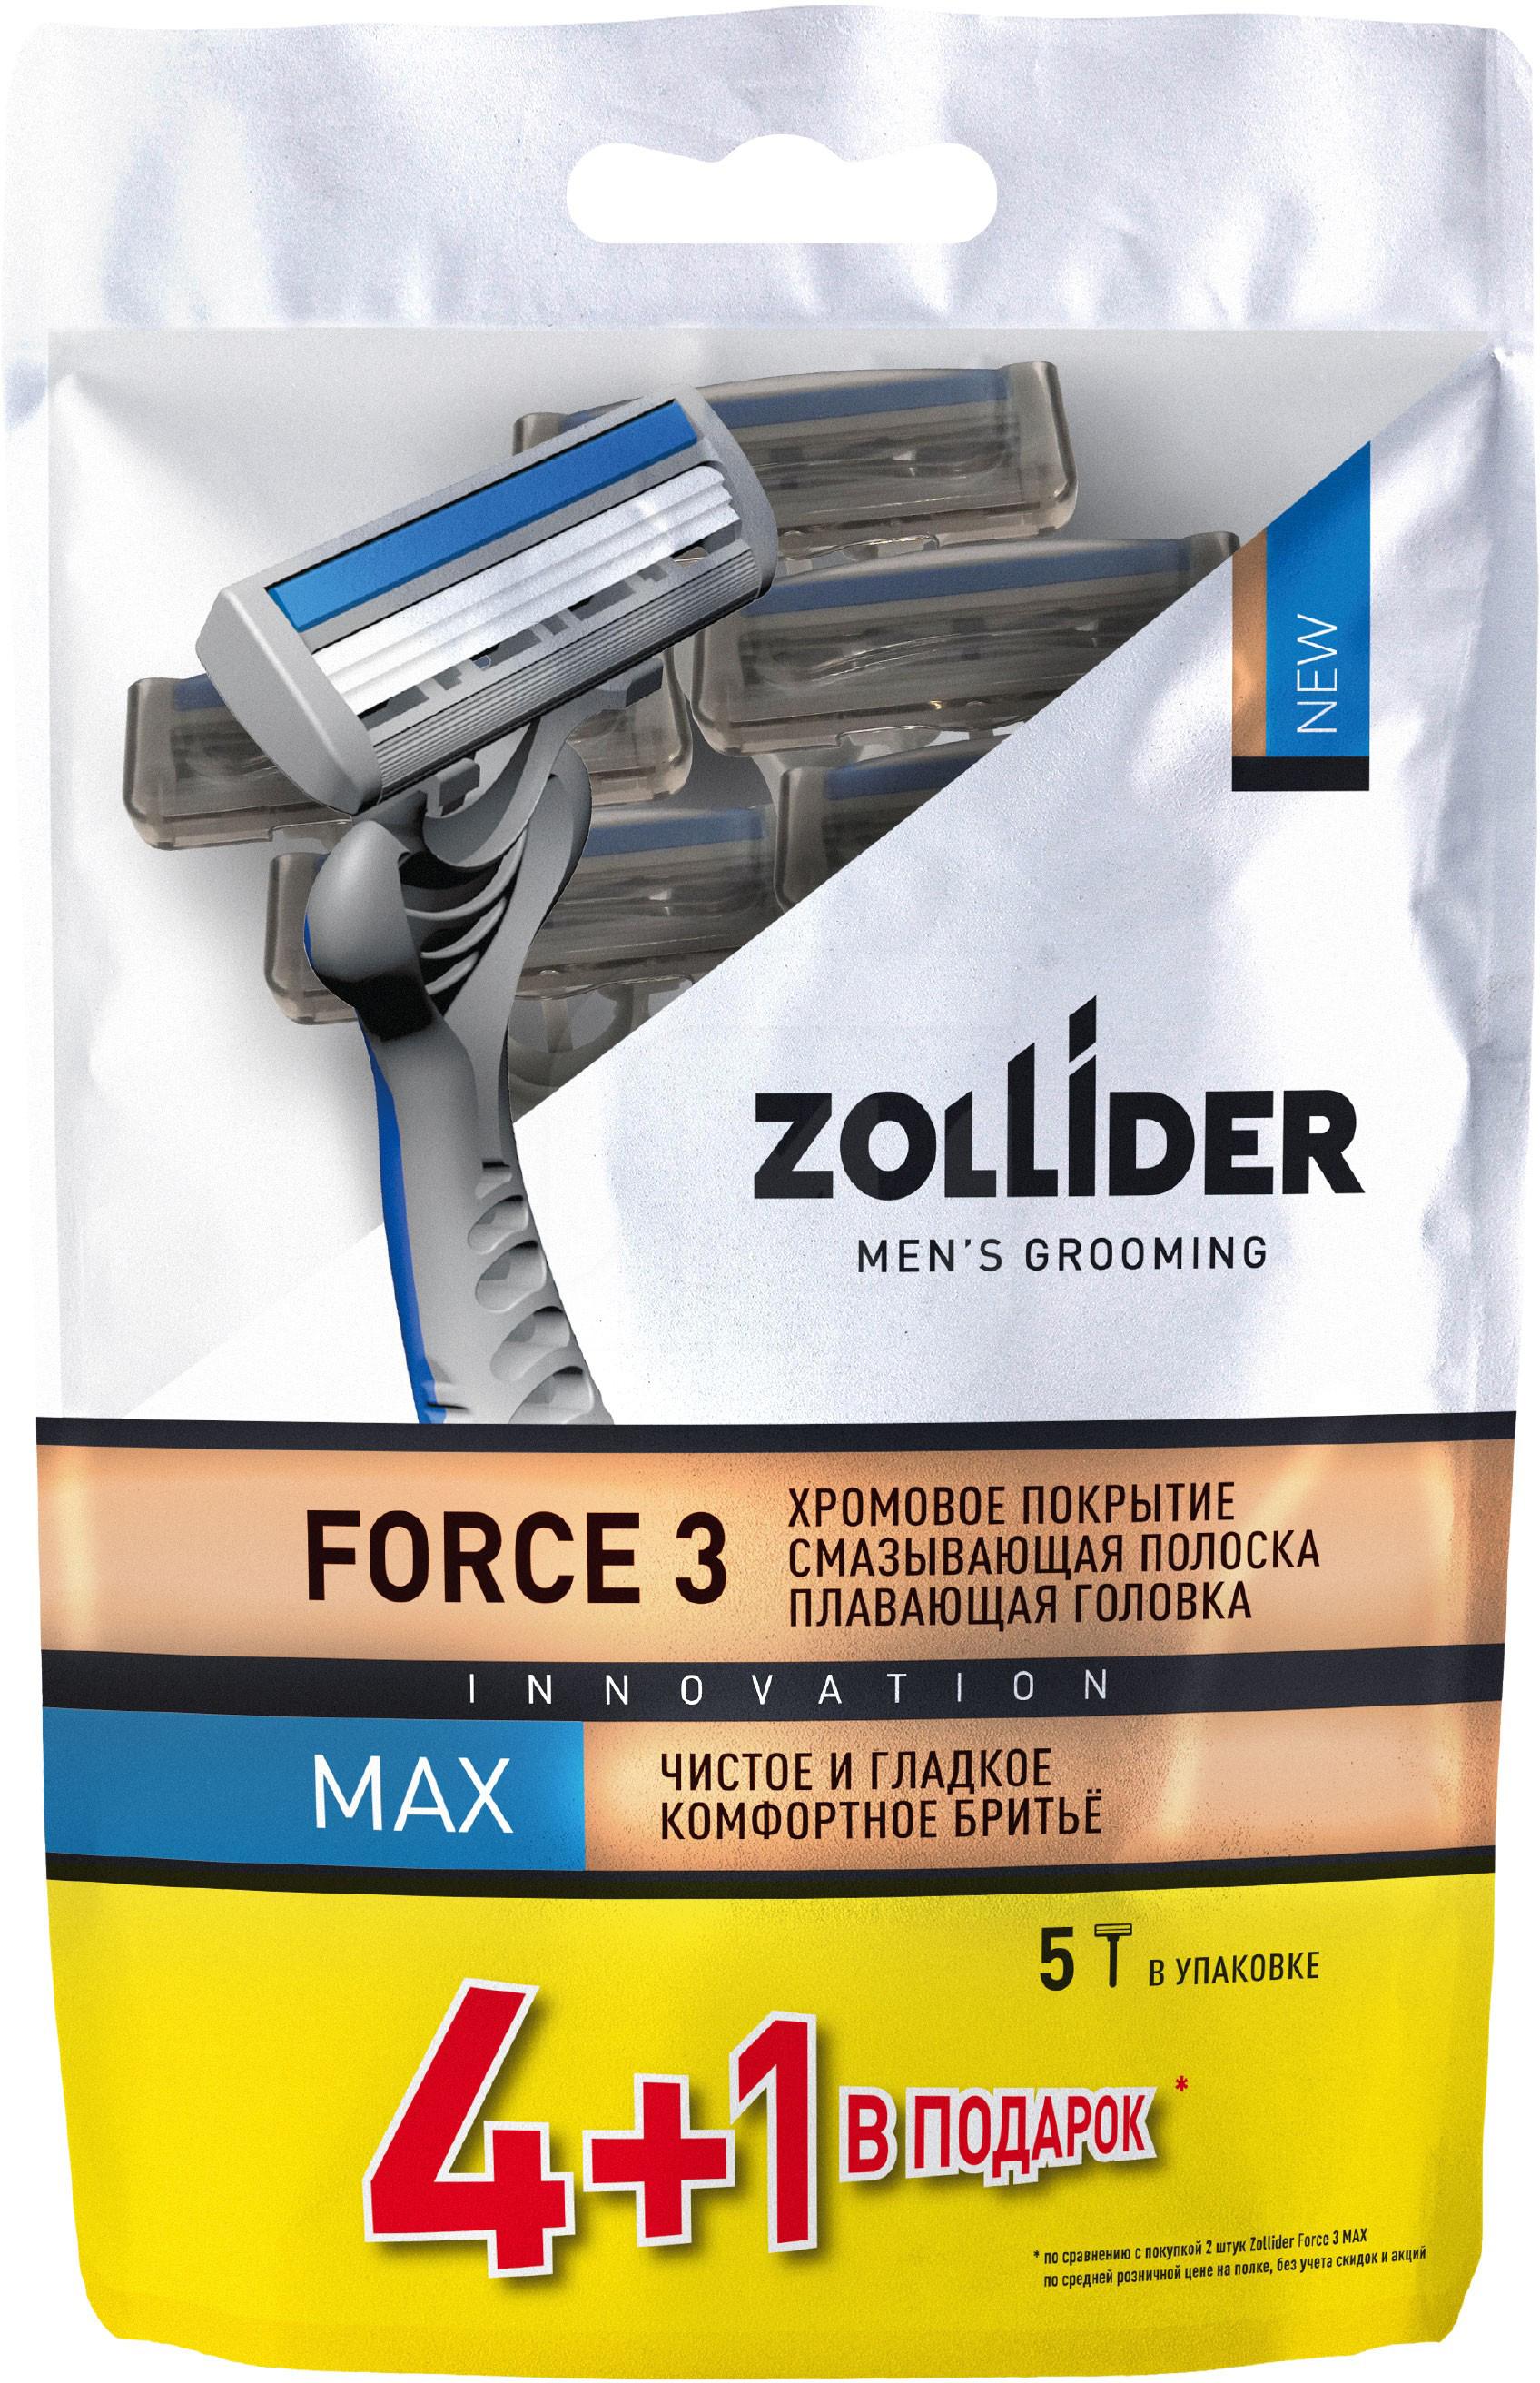 Бритвенные станки мужские Zollider Force 3 Max одноразовые с тройными лезвиями 4 + 1 шт бритвенные станки одноразовые rapira sprint 2 лезвия 3 шт